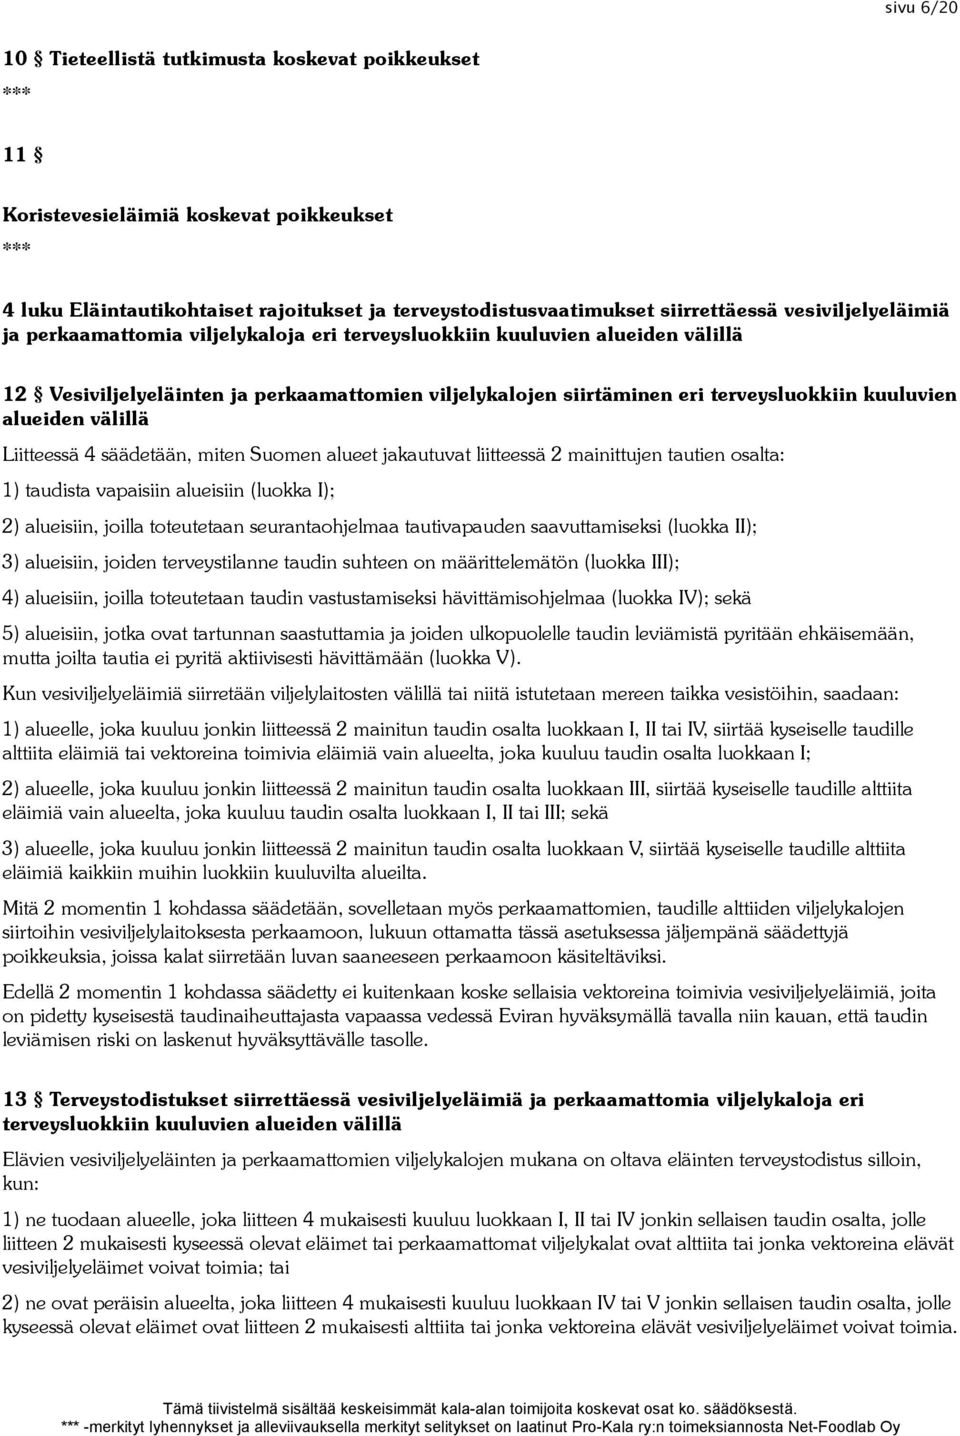 alueiden välillä Liitteessä 4 säädetään, miten Suomen alueet jakautuvat liitteessä 2 mainittujen tautien osalta: 1) taudista vapaisiin alueisiin (luokka I); 2) alueisiin, joilla toteutetaan